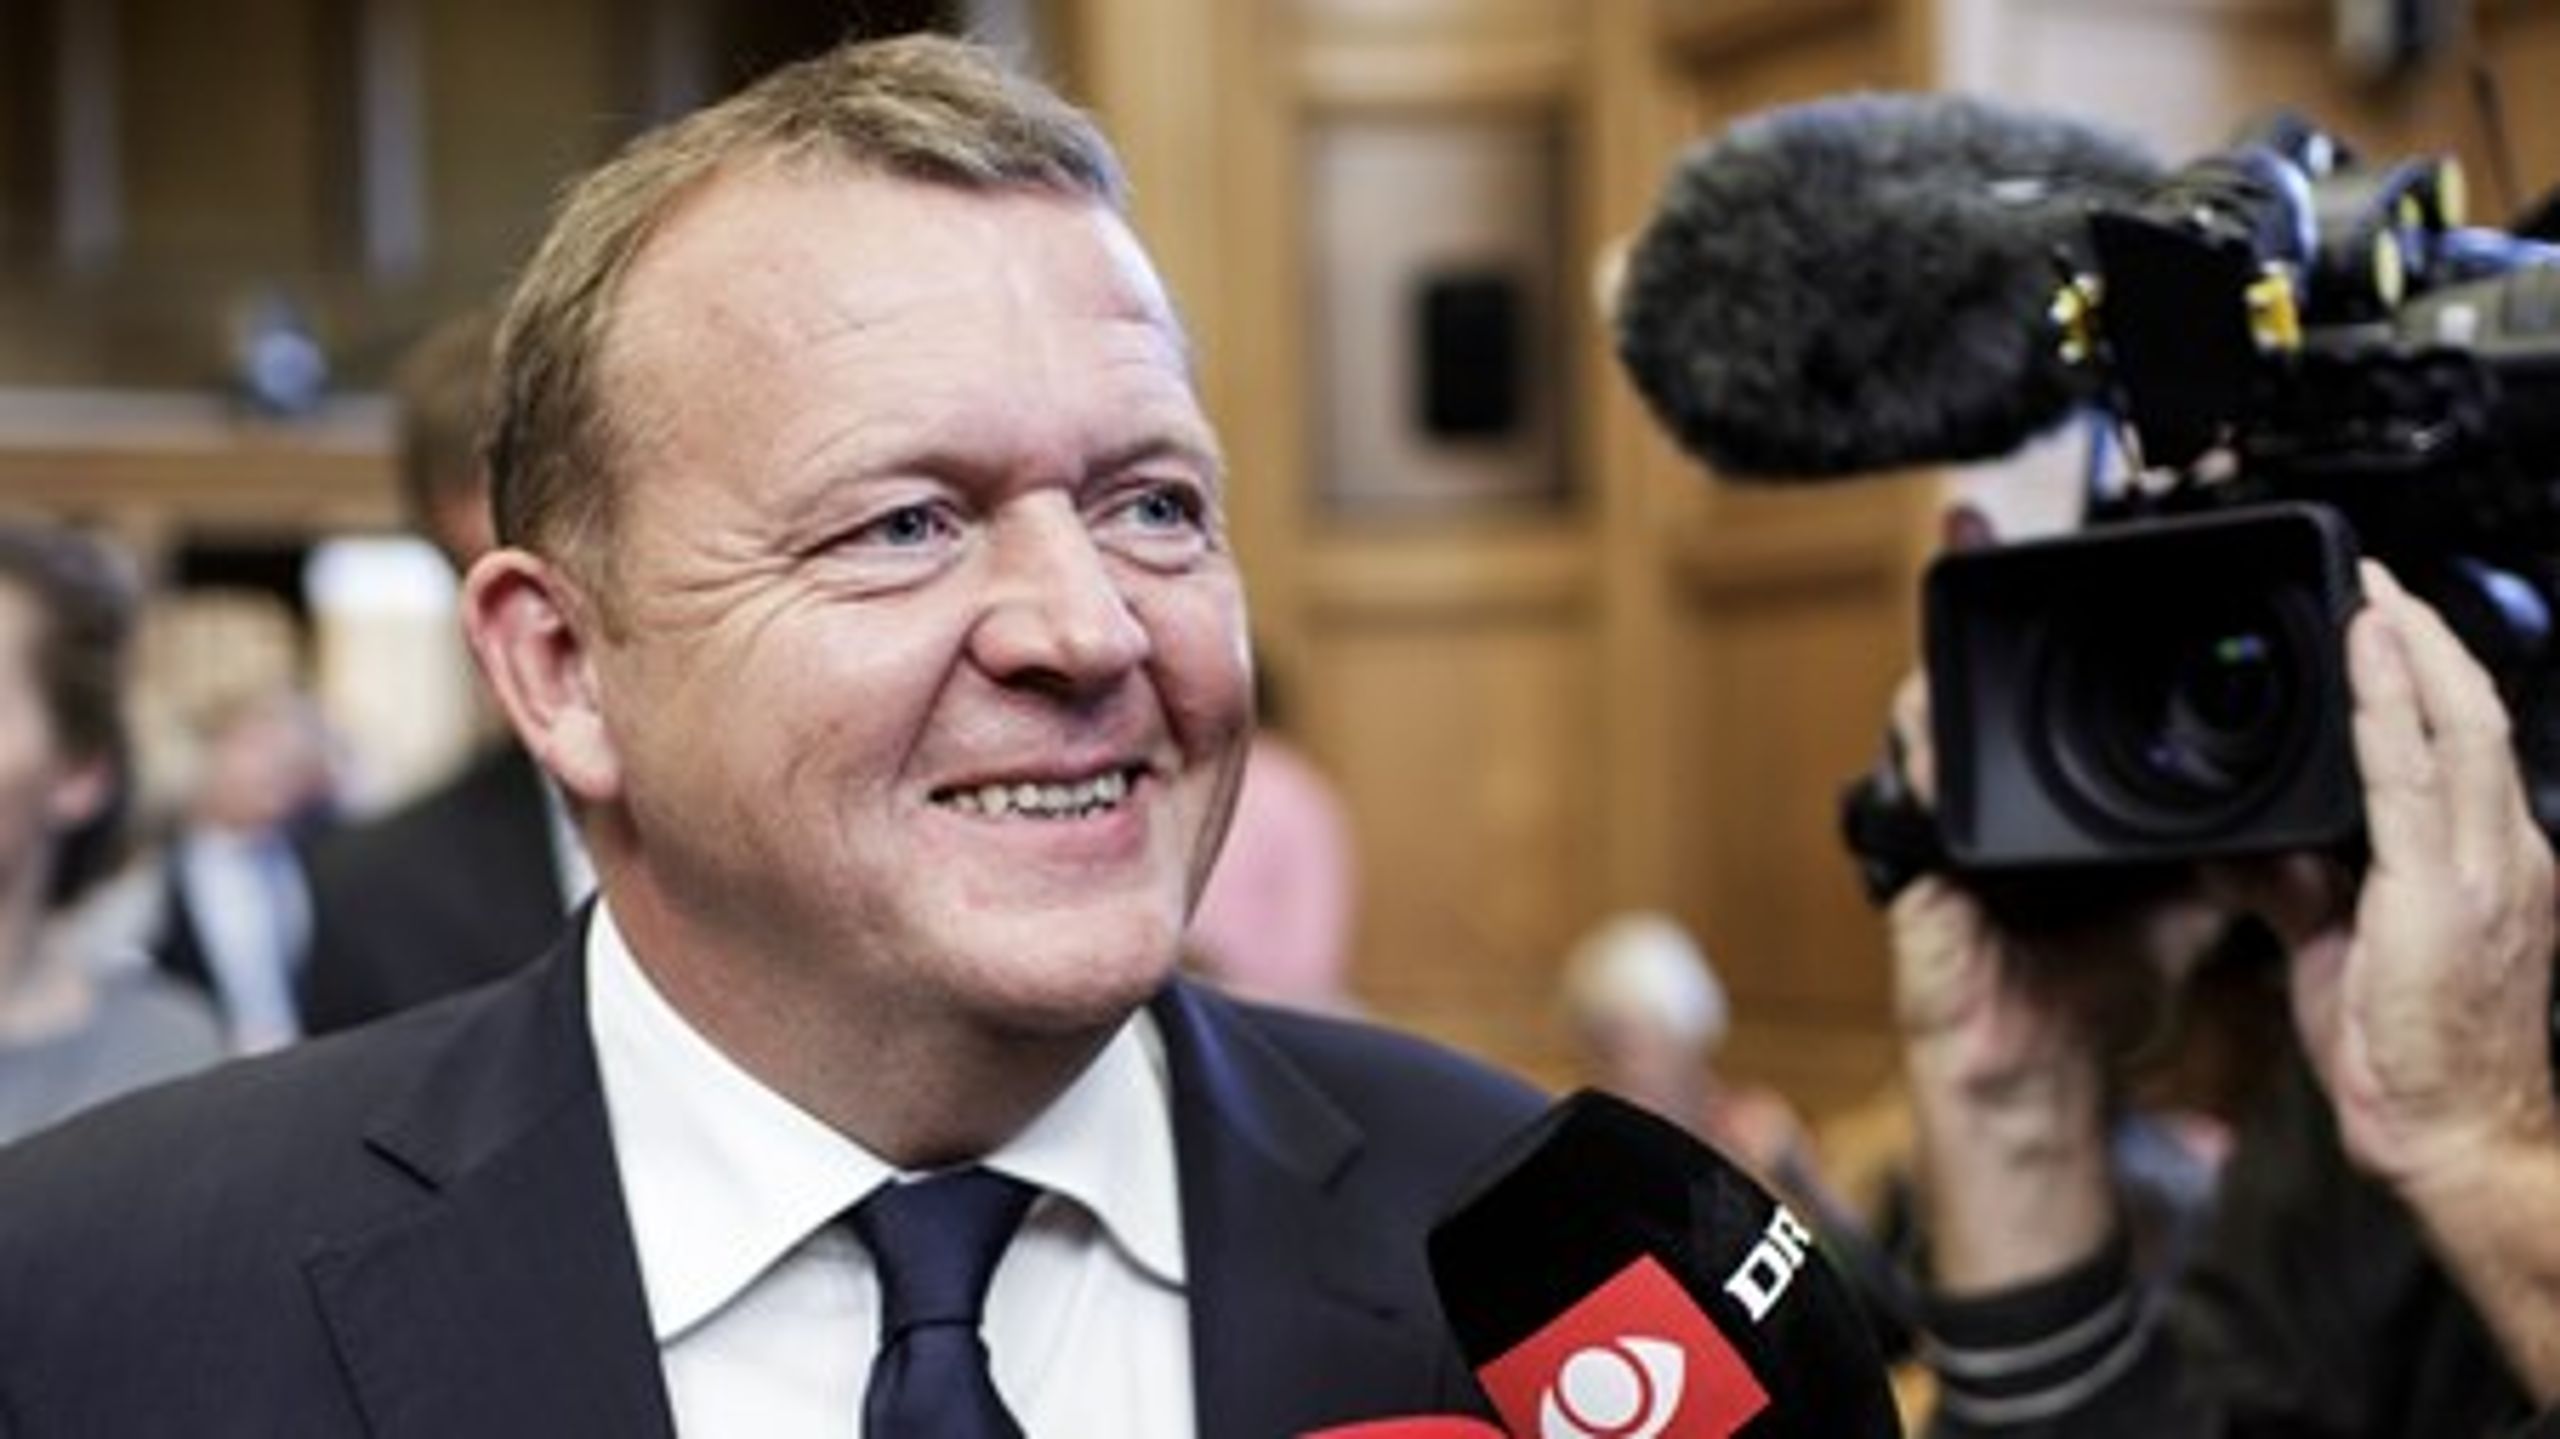 Lars Løkke Rasmussen (V) kan glæde sig over, at 15 procent af vælgerne ser Venstre som det næstbedste parti.